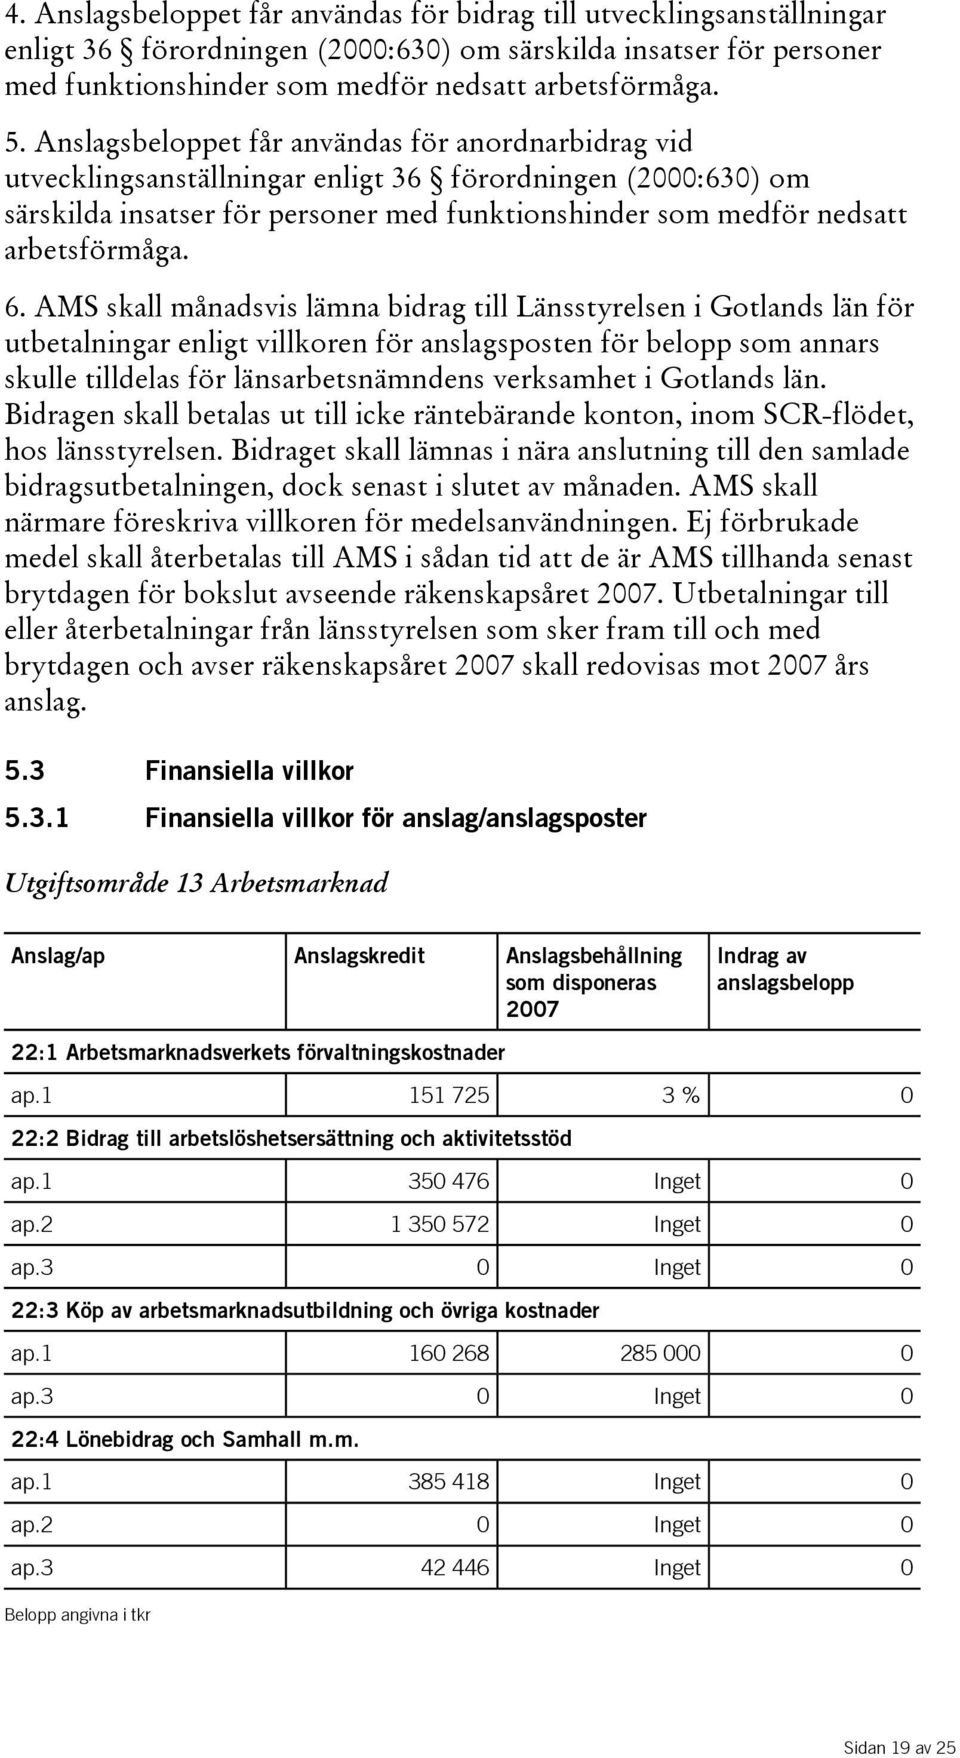 6. AMS skall månadsvis lämna bidrag till Länsstyrelsen i Gotlands län för utbetalningar enligt villkoren för anslagsposten för belopp som annars skulle tilldelas för länsarbetsnämndens verksamhet i